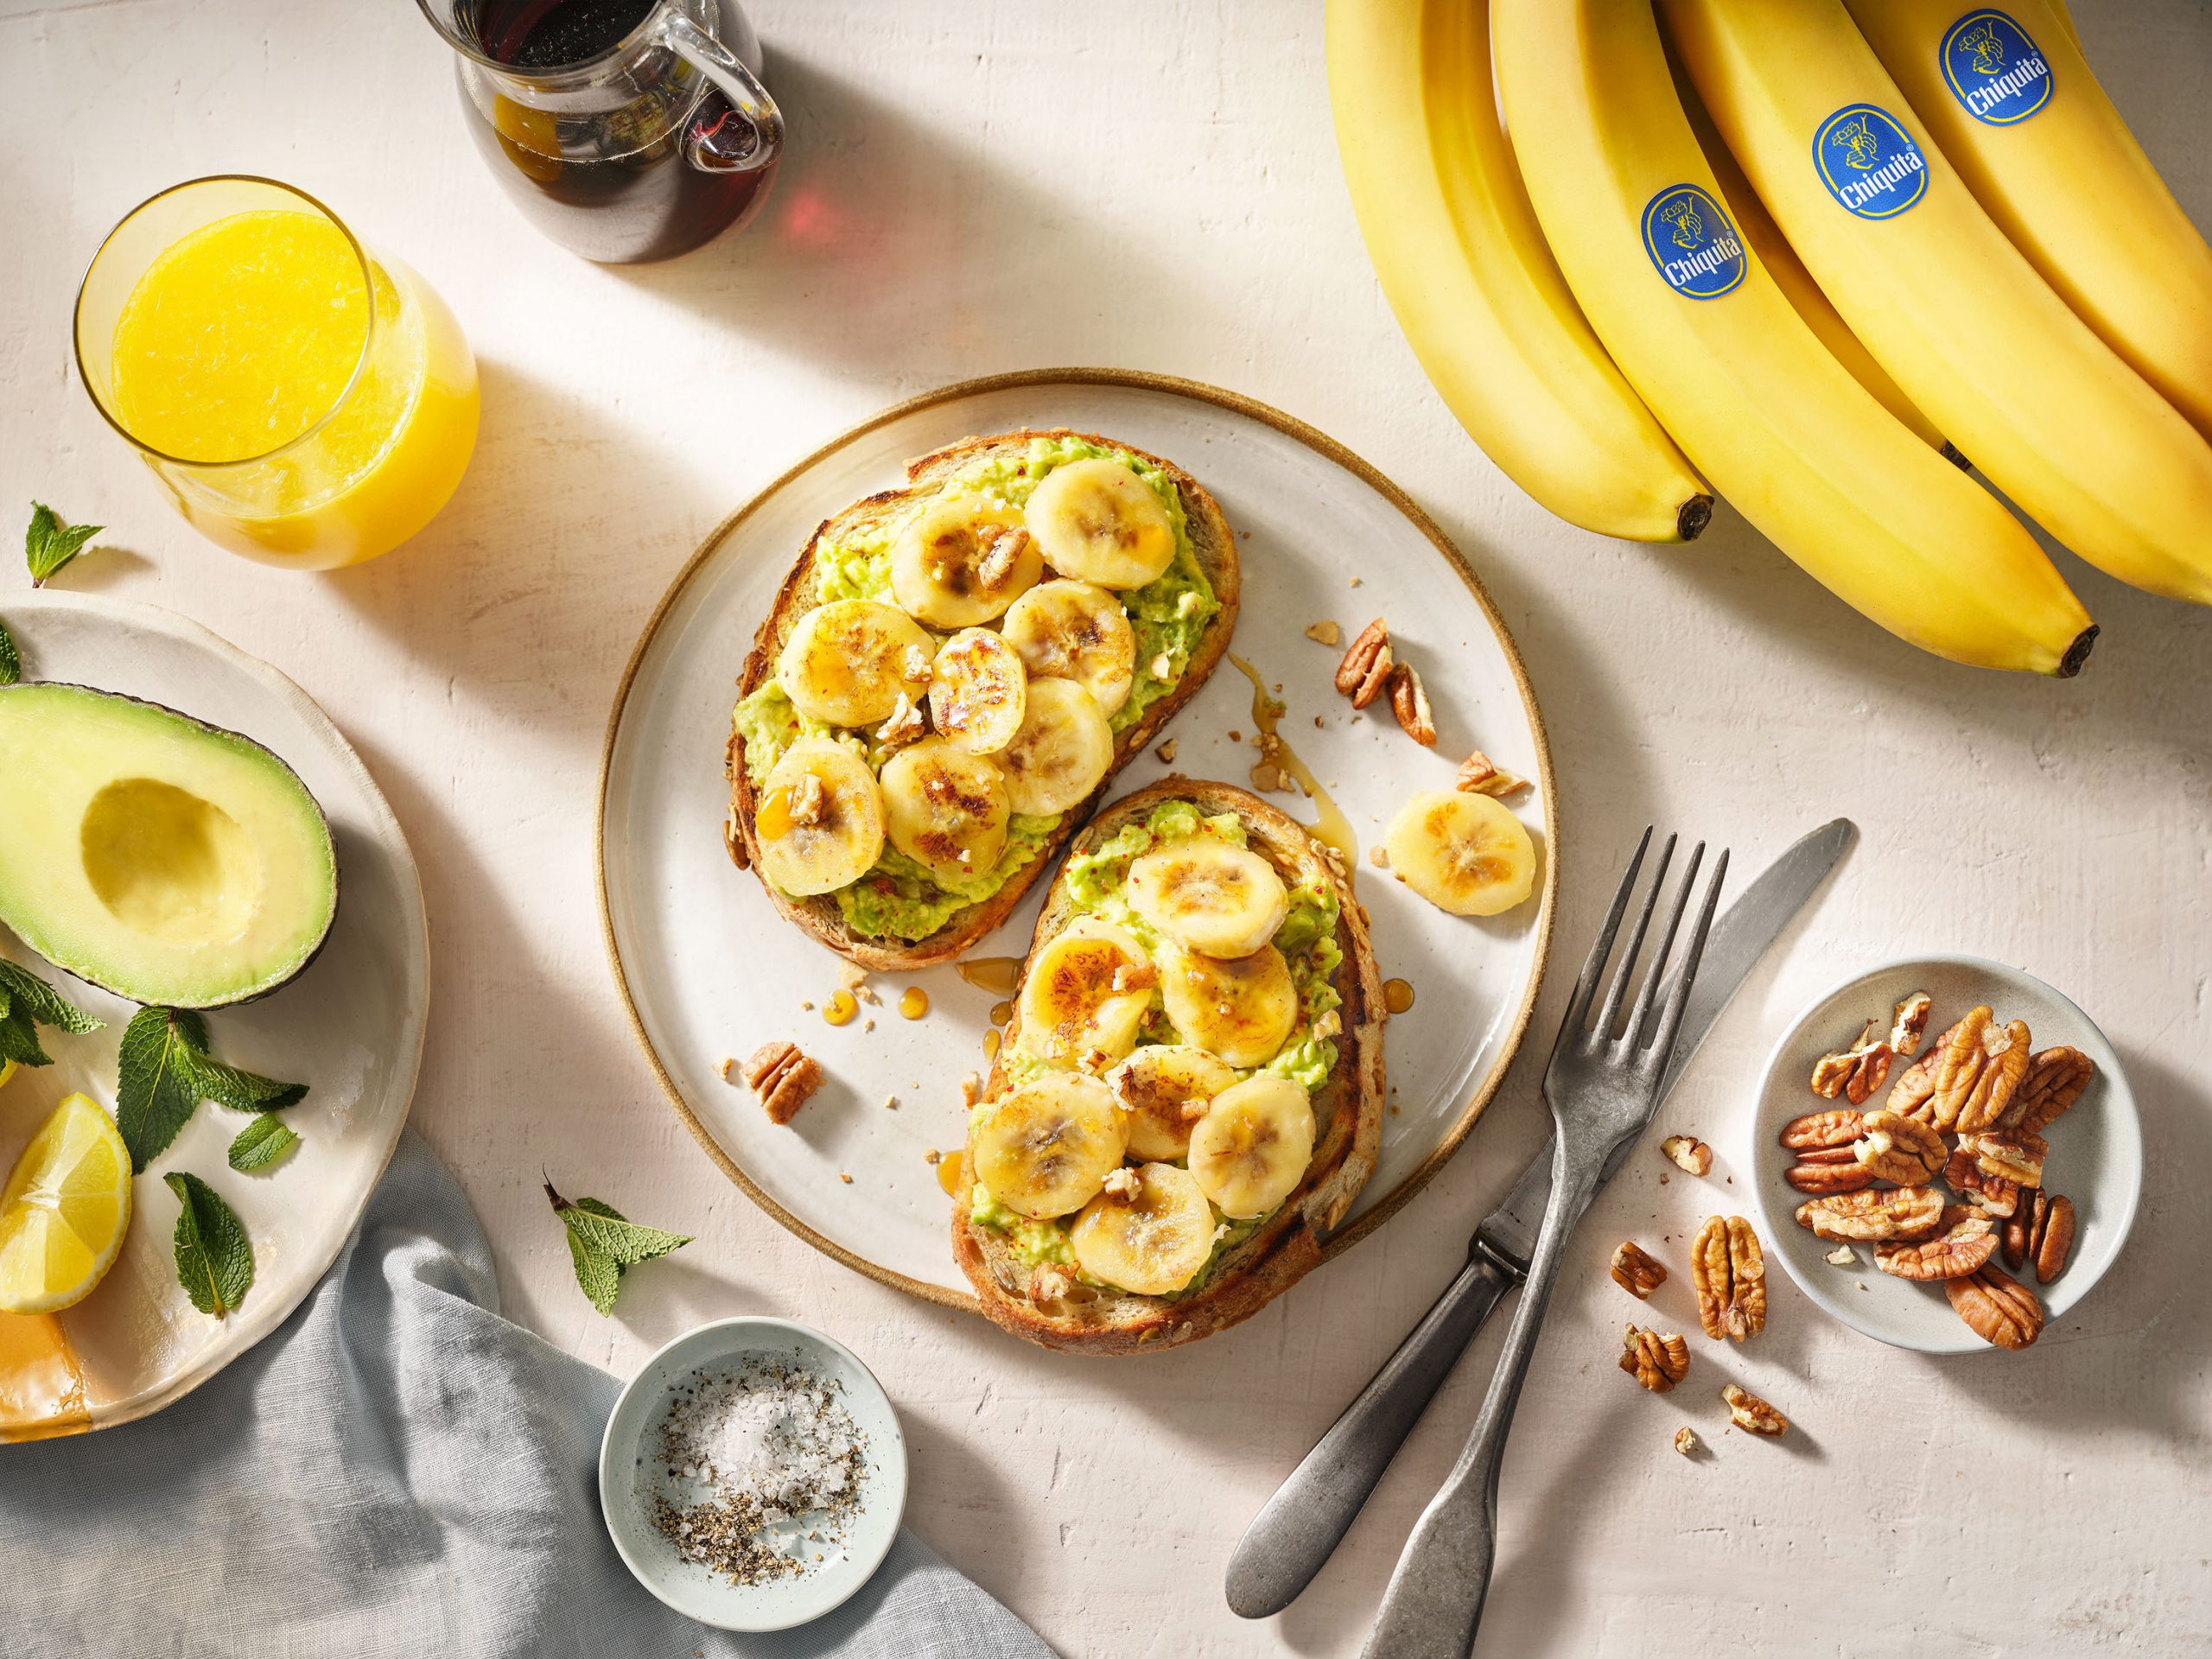 Tostada de aguacate y banana Chiquita para el desayuno